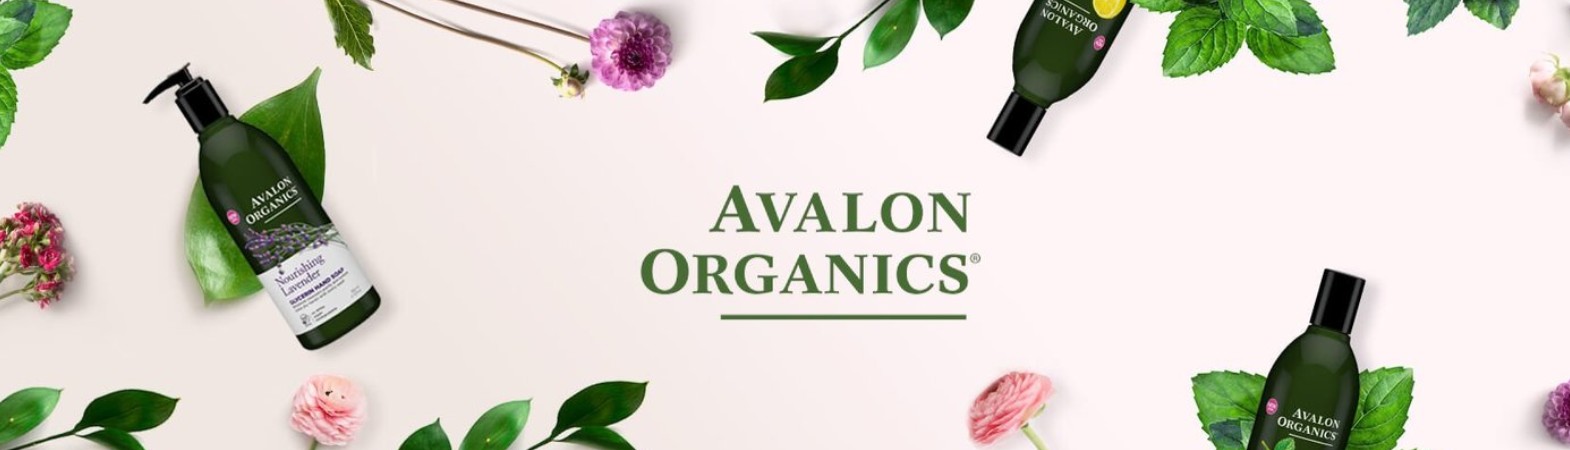 Avalon Organics - HAIR